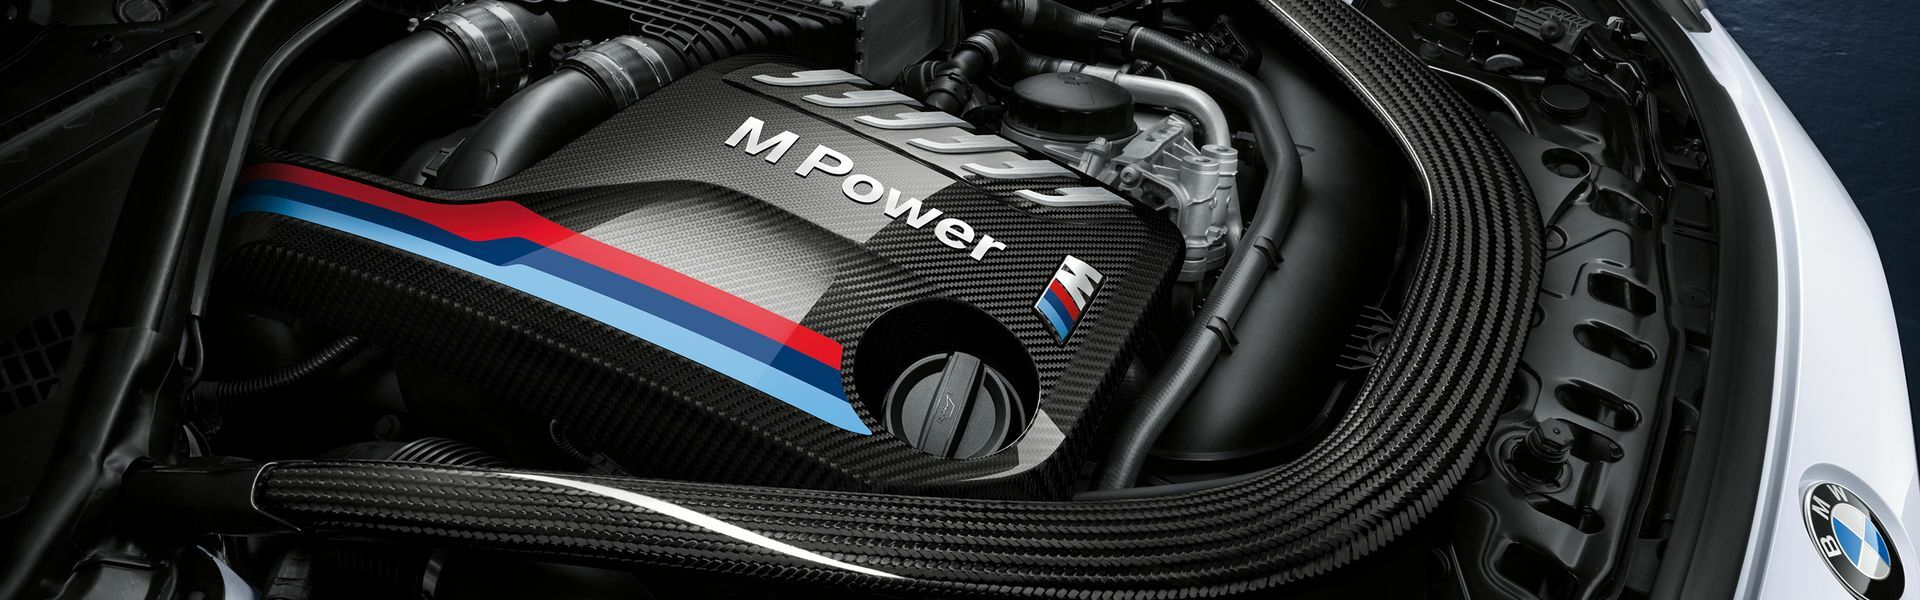 Zvýšení výkonu/ Softwarové úpravy/ Drobné performance díly pro automobil Porsche 911 Carrera Cabriolet /S/4/4S/GTS 997 DFI